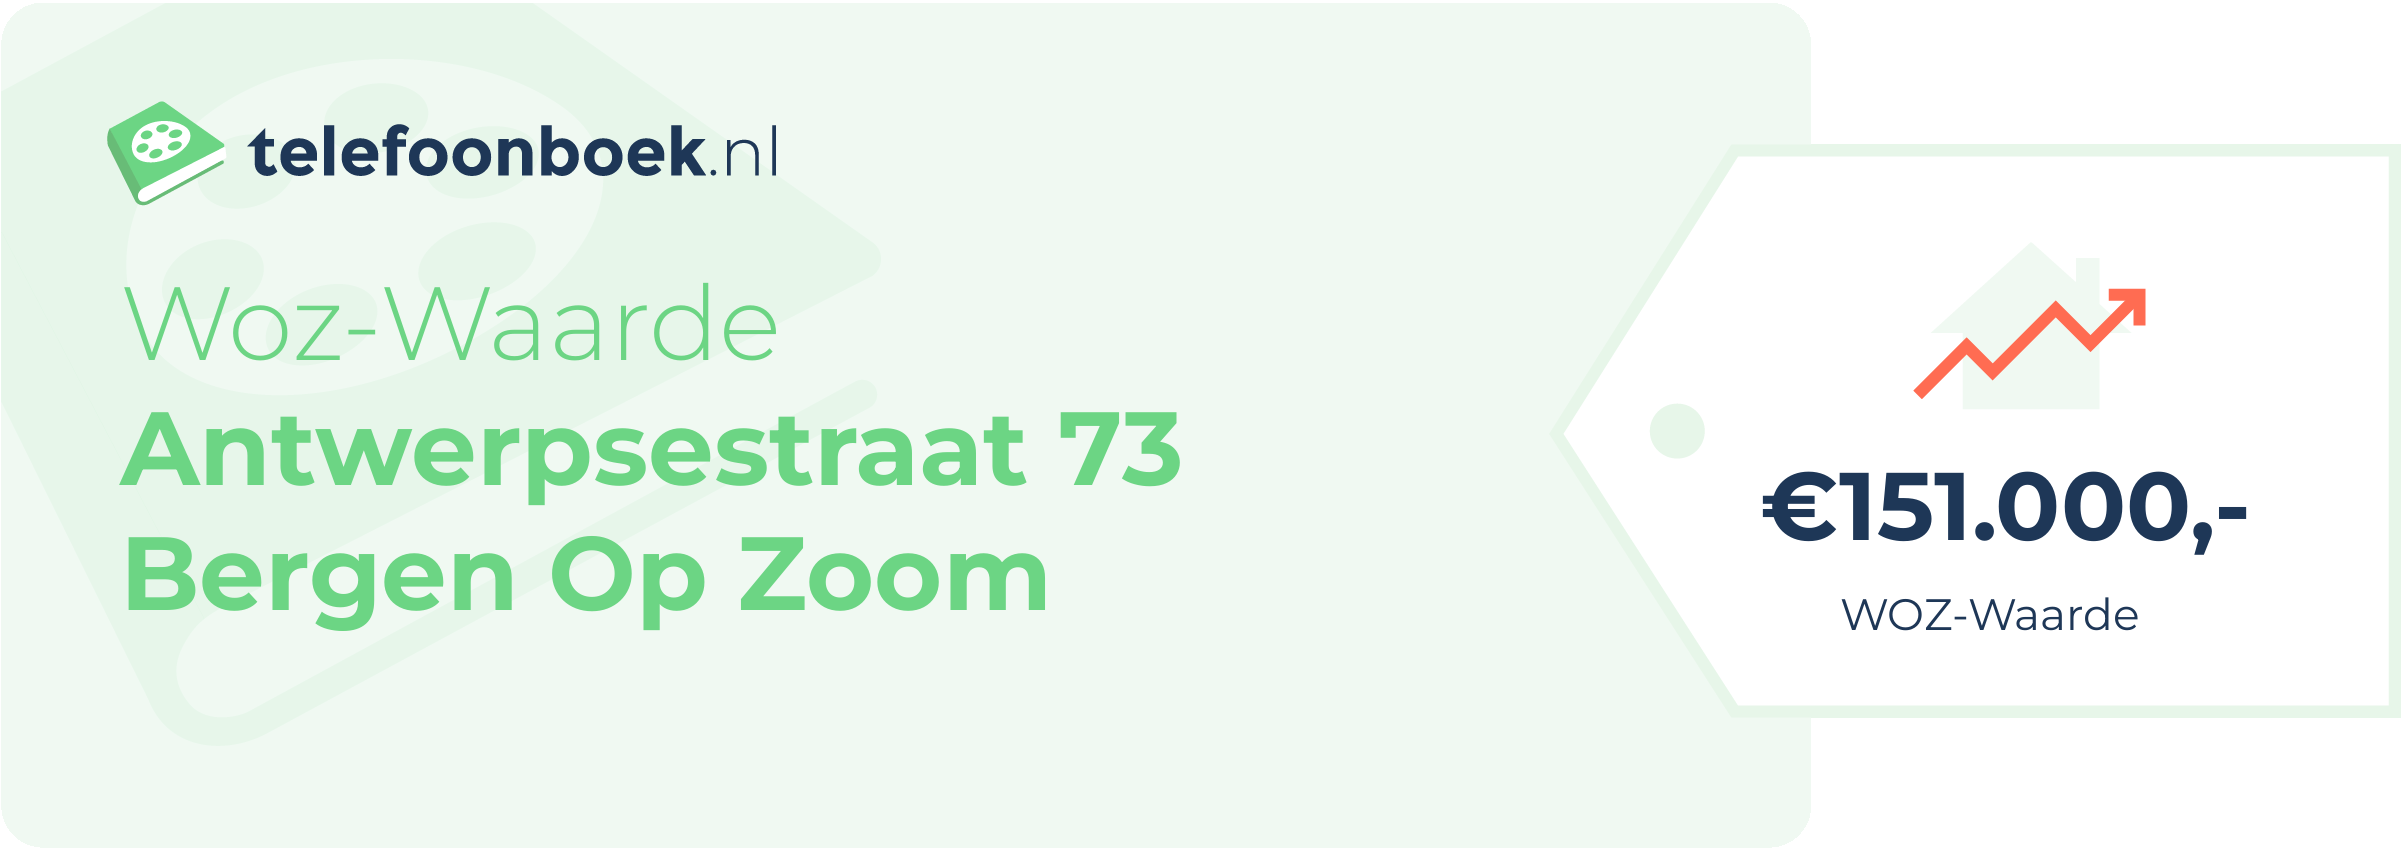 WOZ-waarde Antwerpsestraat 73 Bergen Op Zoom